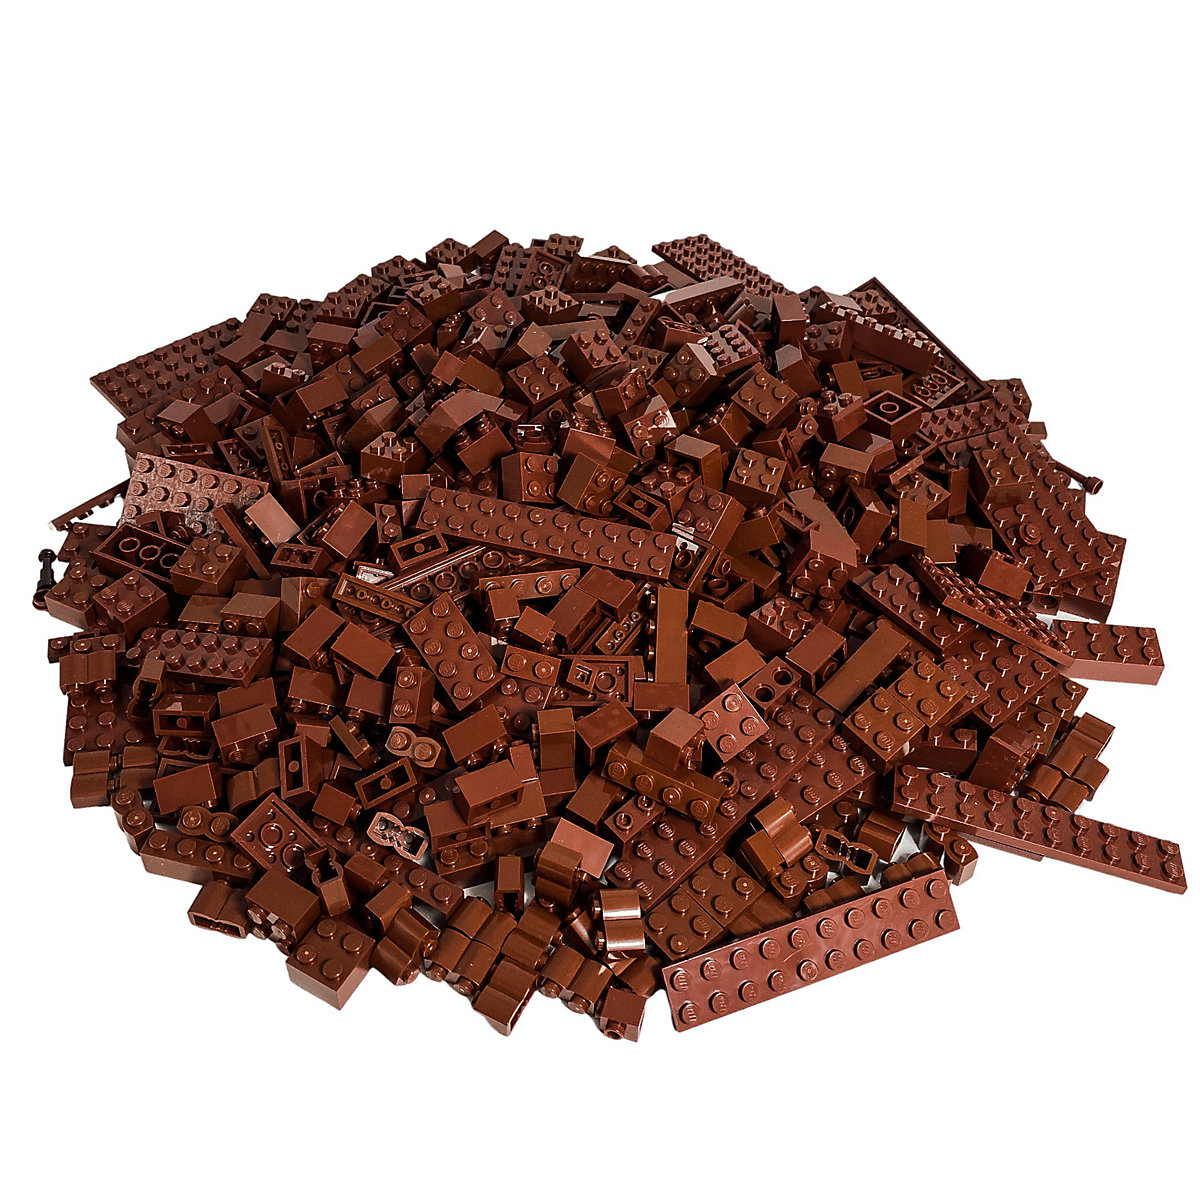 LEGO® Steine Braun gemischt 500 Stück Reddish Brown bricks mix NEU